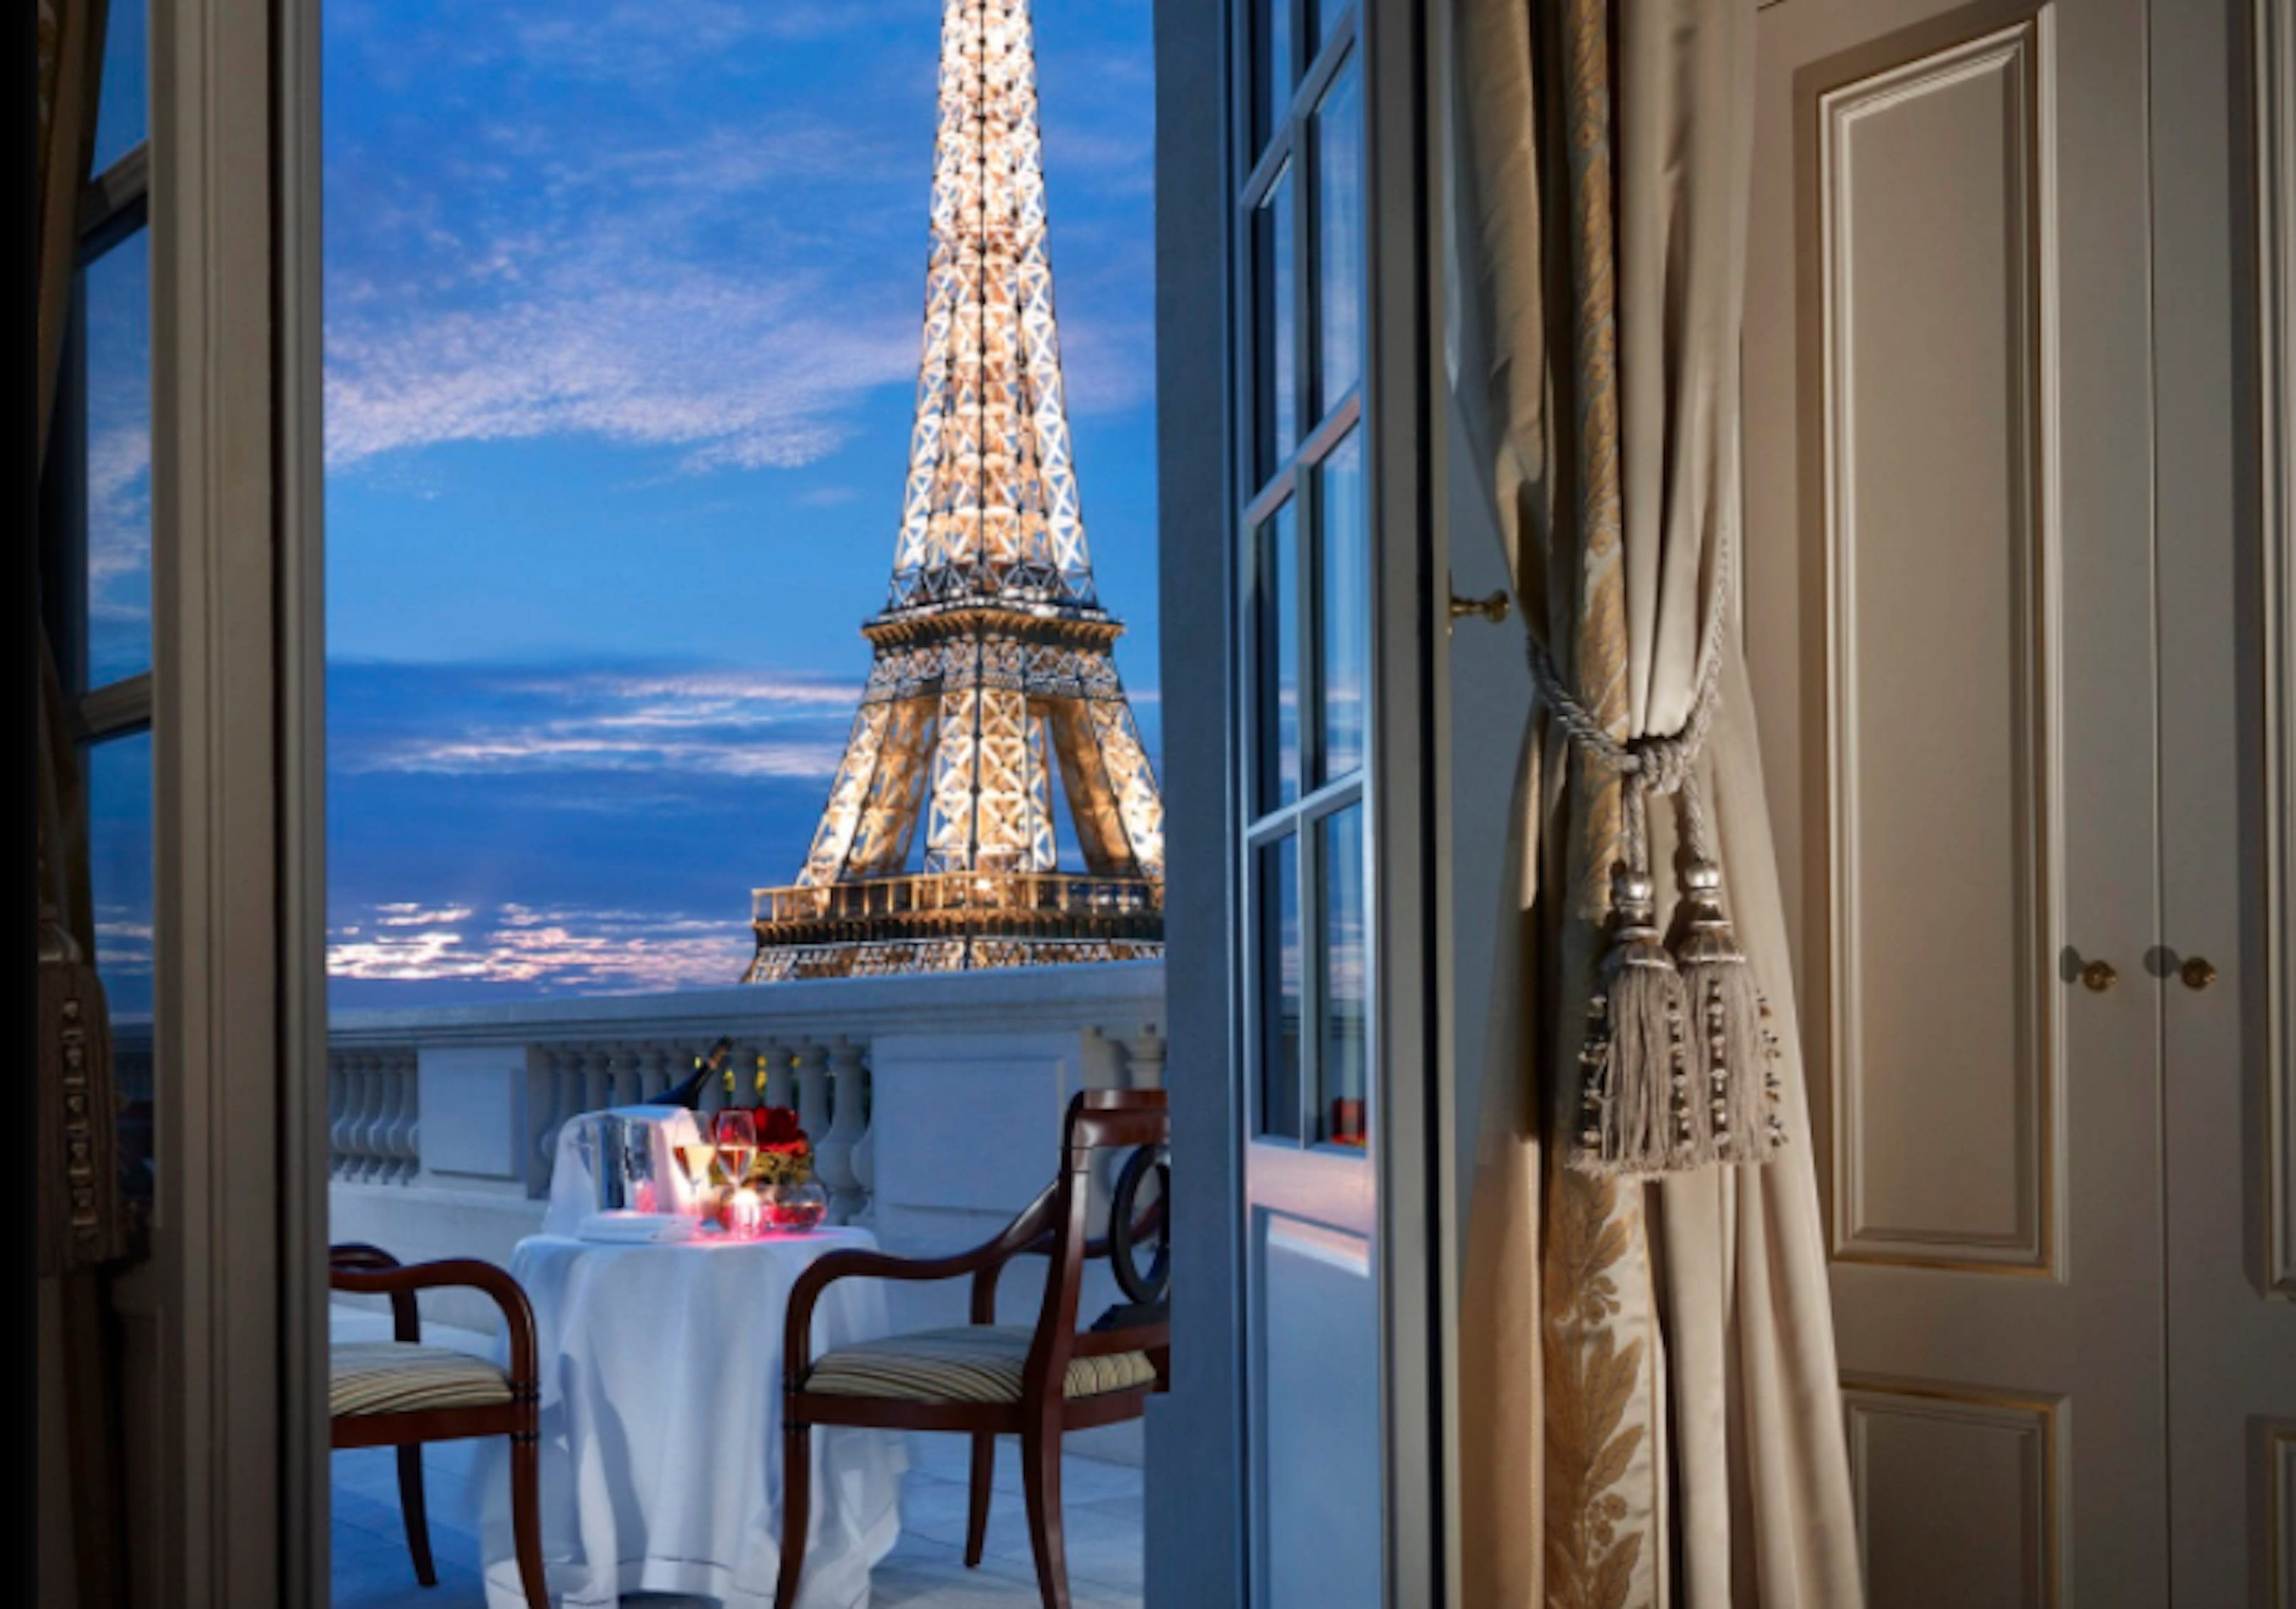 El Palacio Bonaparte, hoy convertido en hotel cuenta con 100 habitaciones y dos restaurantes, incluido el único restaurante chino con estrella Michelin en Francia (foto: gentileza hotel Shangri-La París)